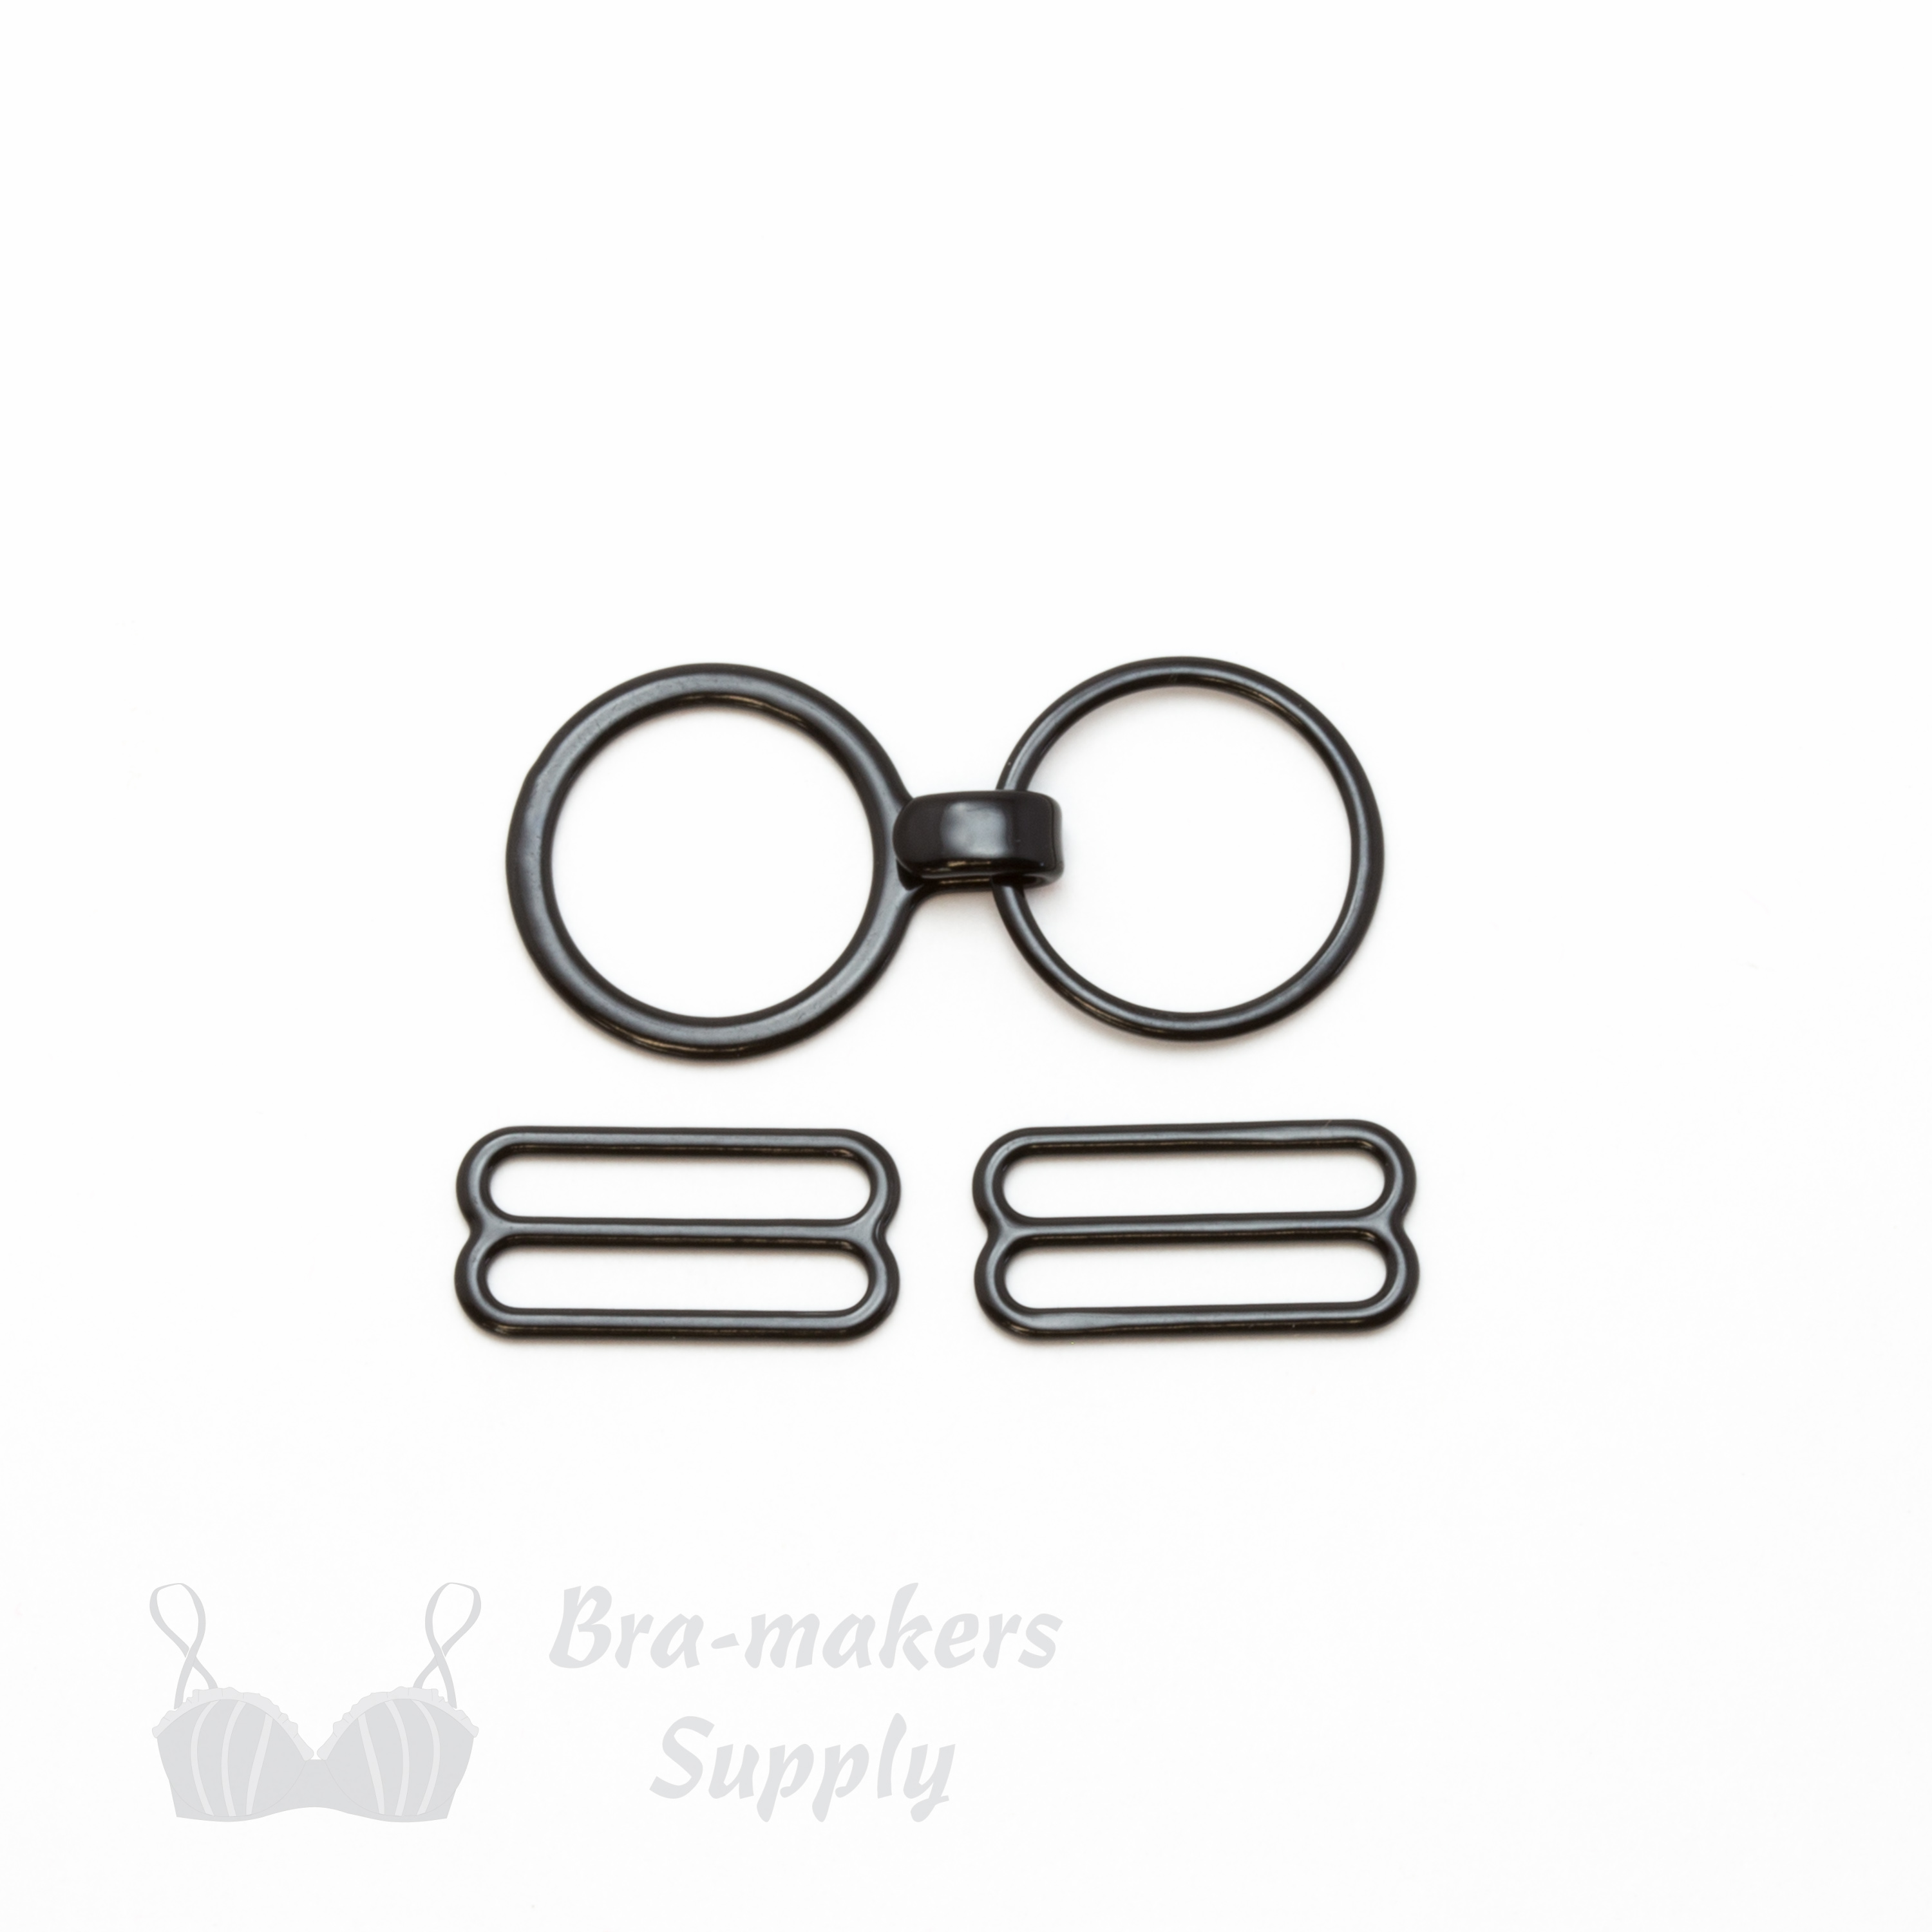 Nylon Coated Metal Sliders Rings - Bra-Makers Supply